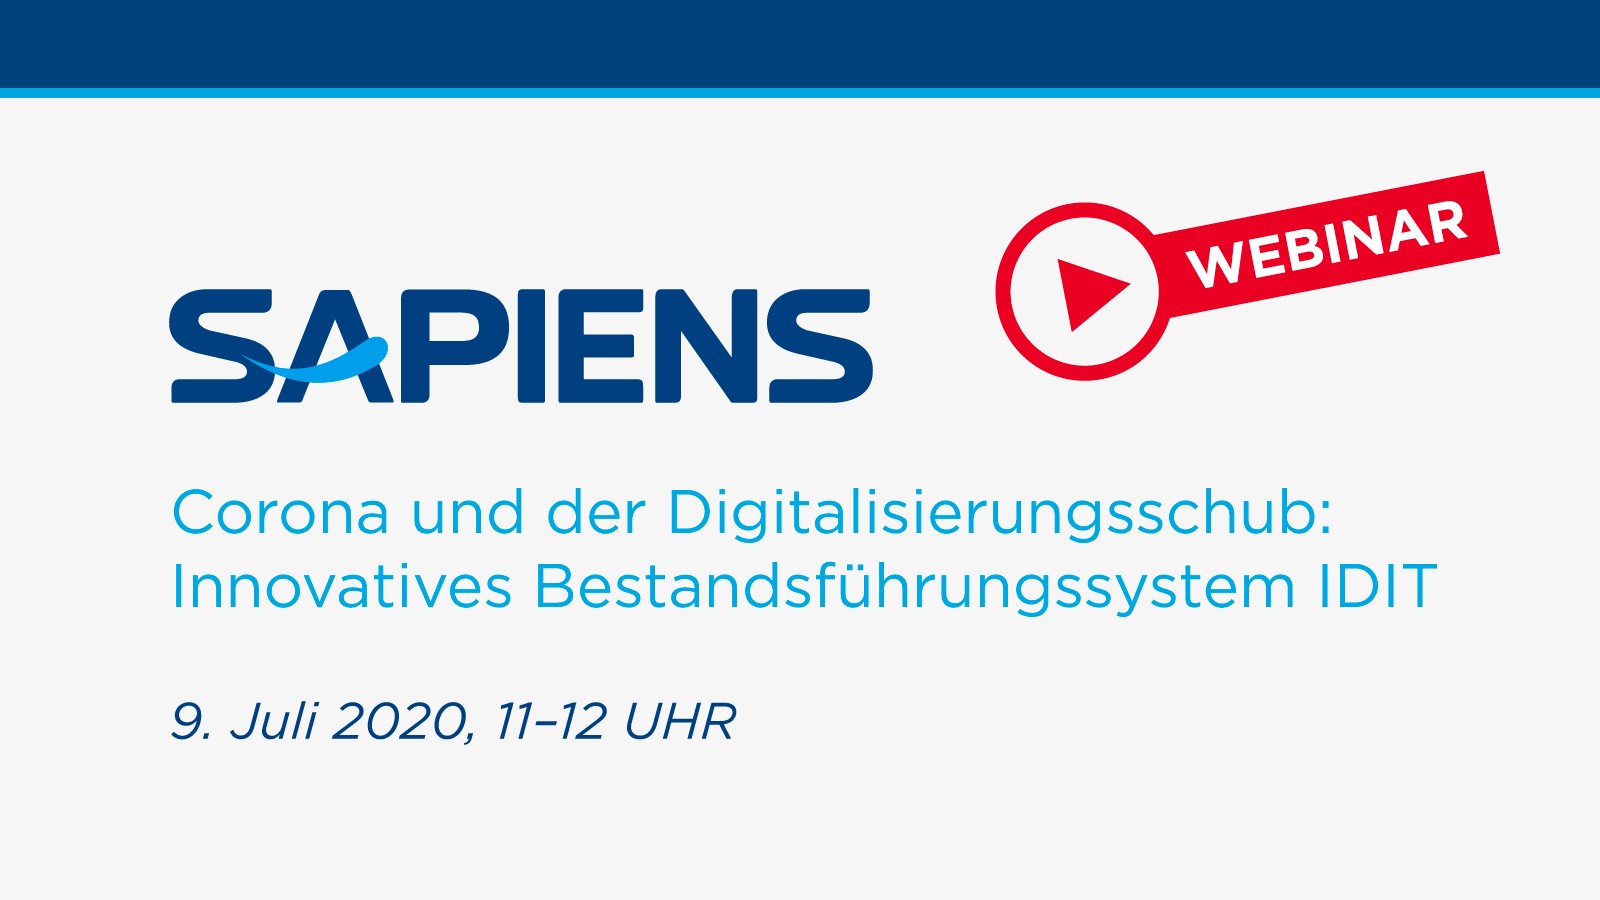 Sapiens mit erstem Webinar am deutschen Markt: Innovatives Bestandsführungssystem IDIT